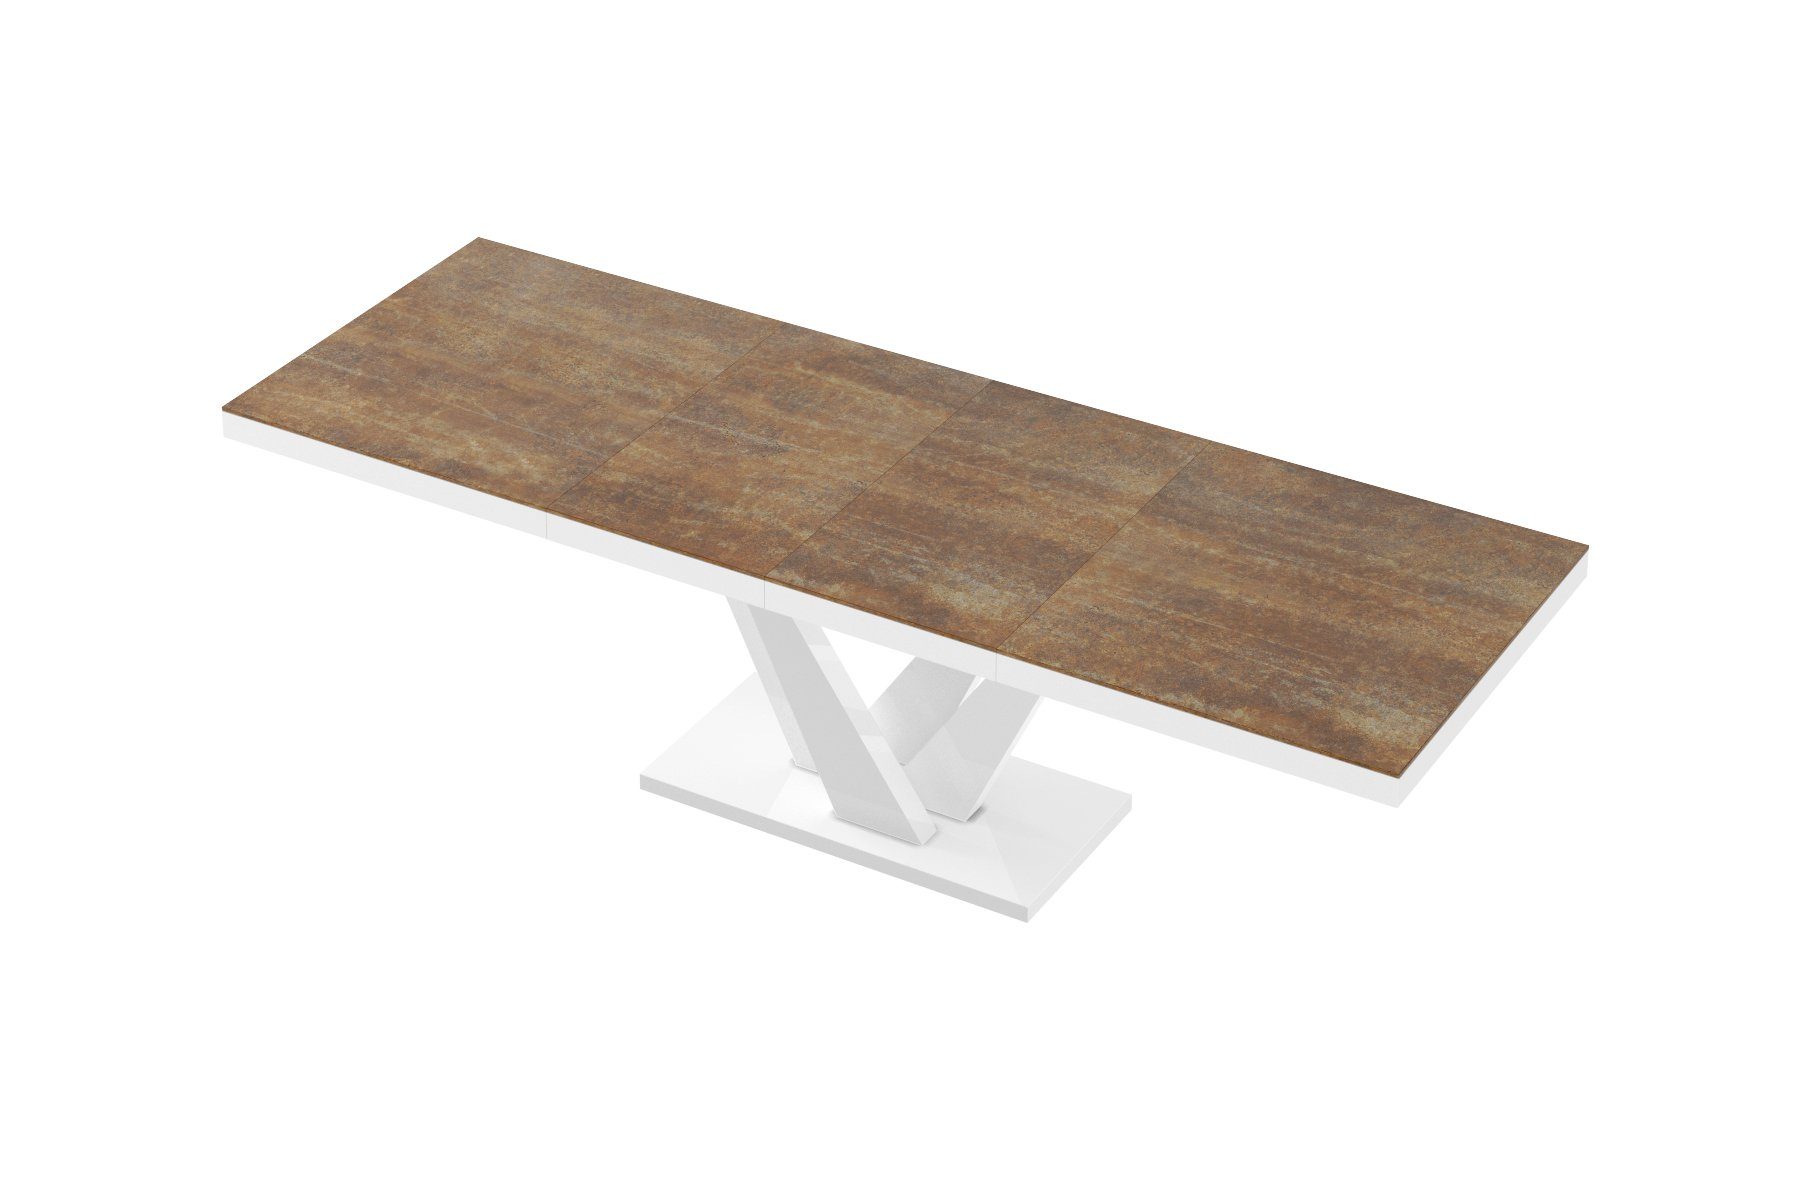 designimpex Esstisch Esstisch Weiß 160 256 cm Rostoptik HEV-111 matt ausziehbar Tisch bis Design - Hochglanz